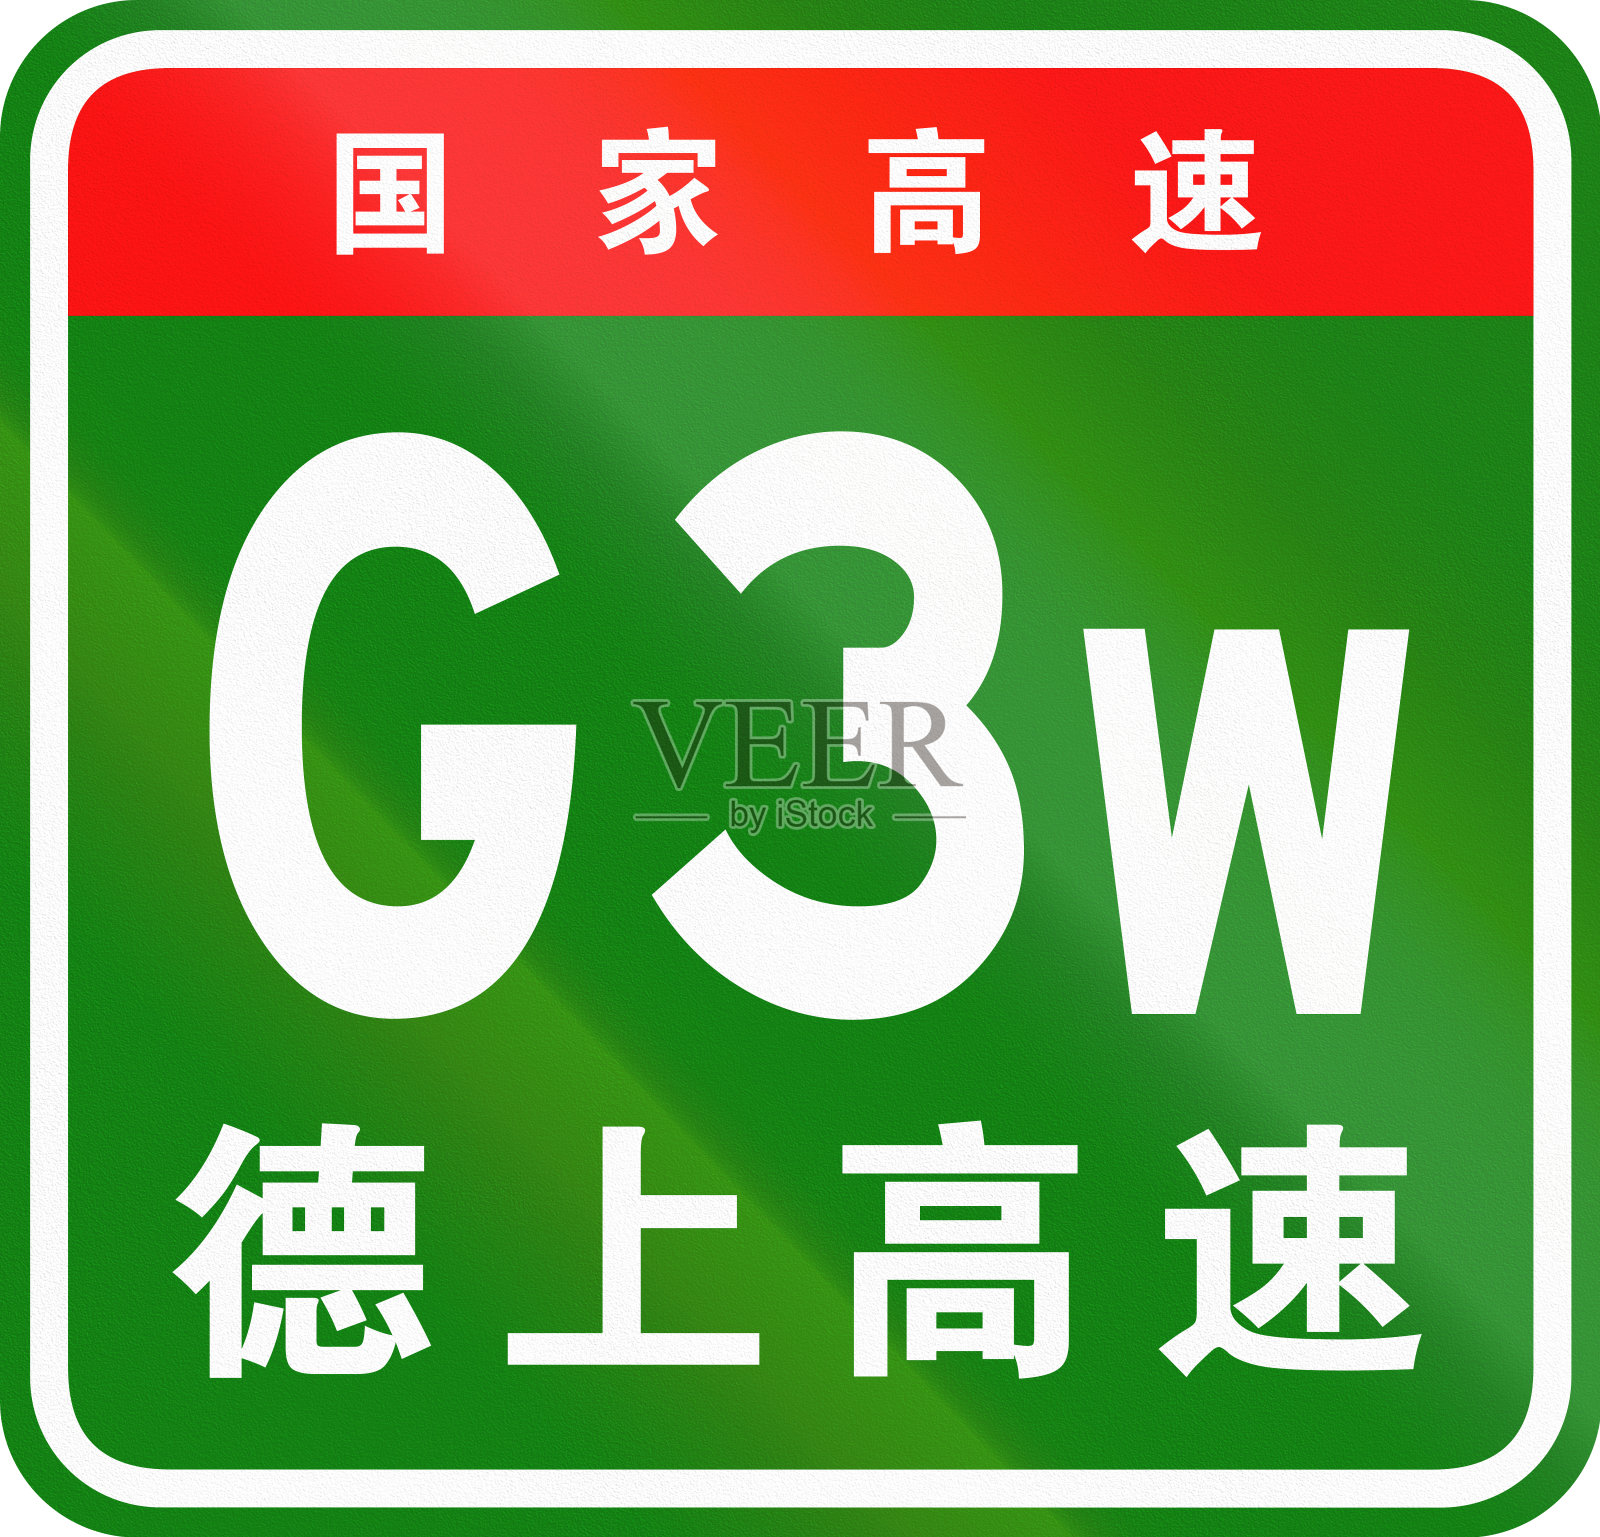 中文路盾——上面的字表示中国国道，下面的字是德饶高速公路的名称插画图片素材